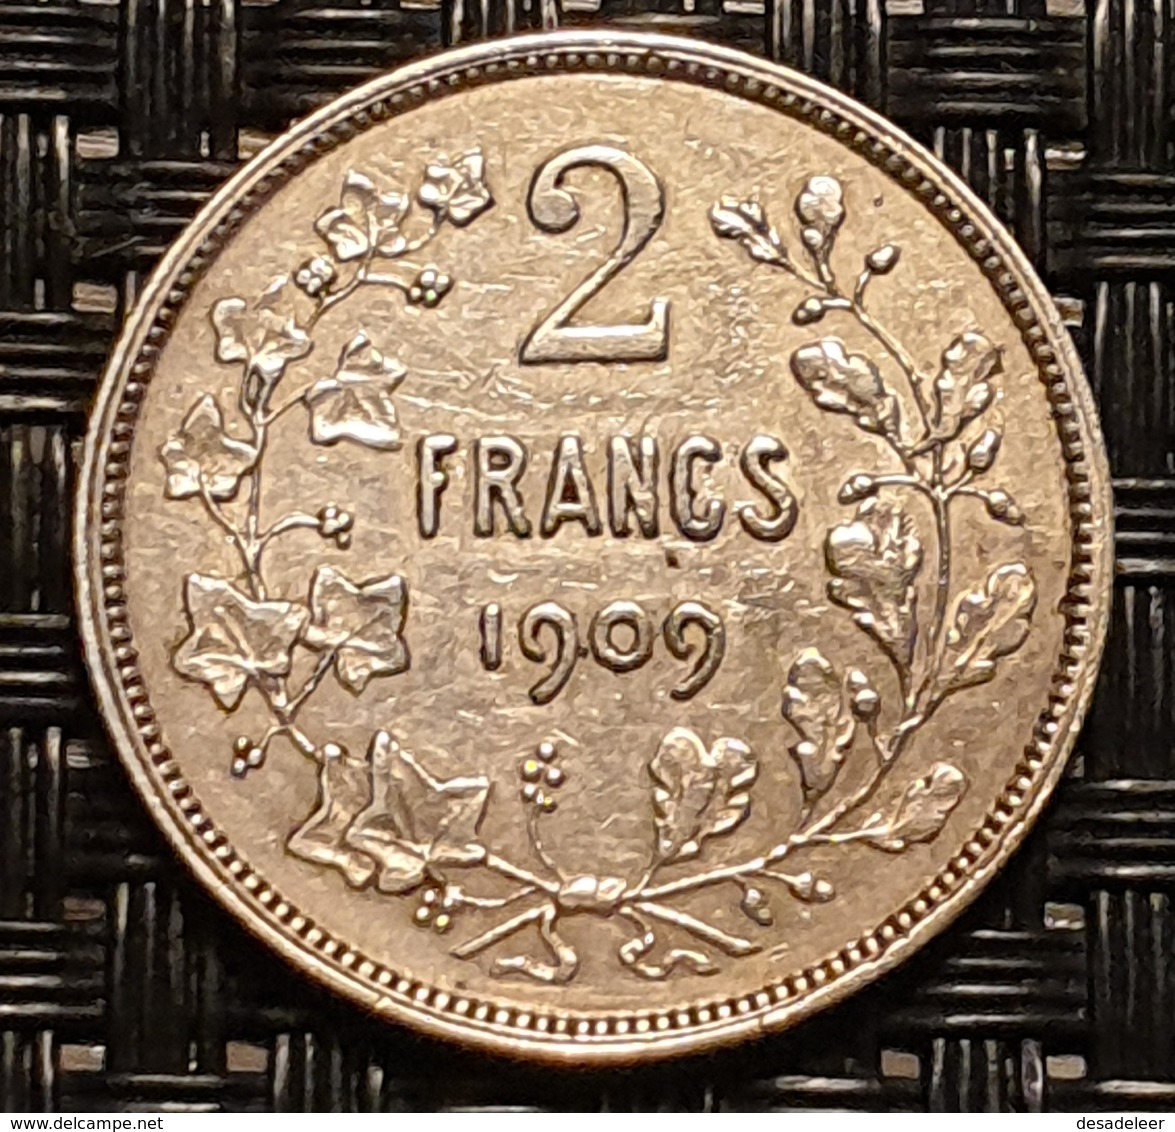 Belgium 2 Francs 1909 (FR) - 2 Francs